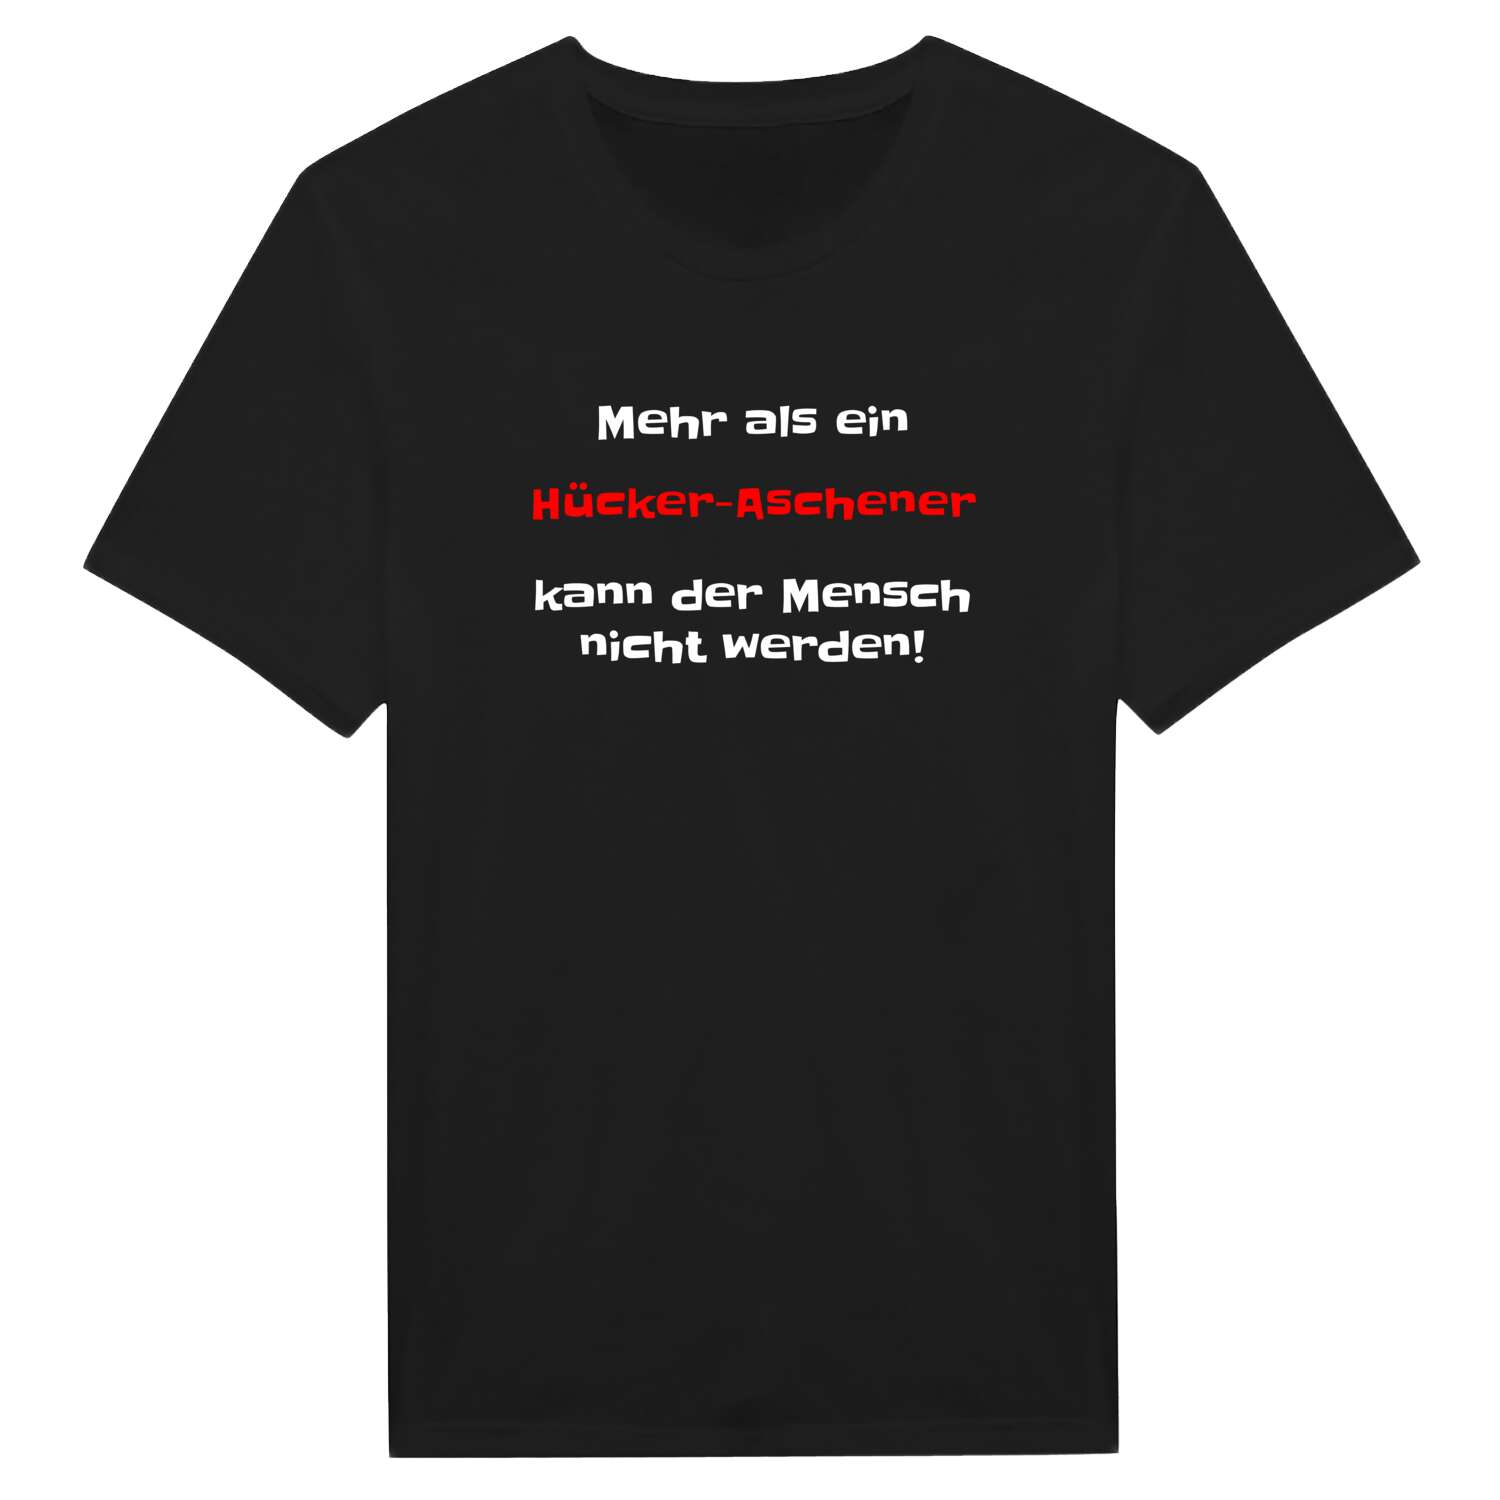 Hücker-Aschen T-Shirt »Mehr als ein«